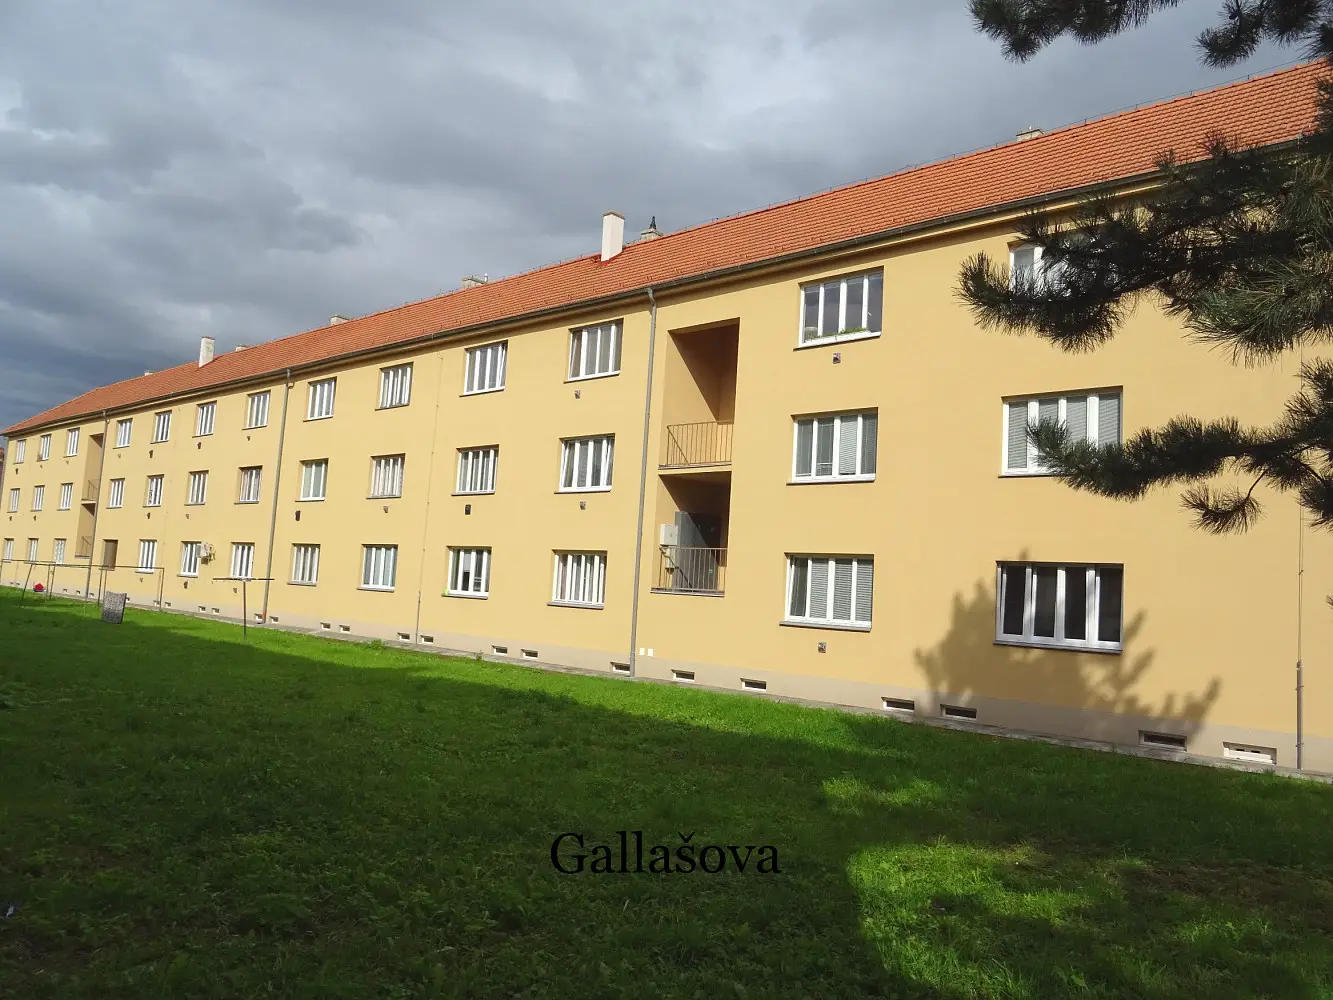 Gallašova, Brno - Štýřice